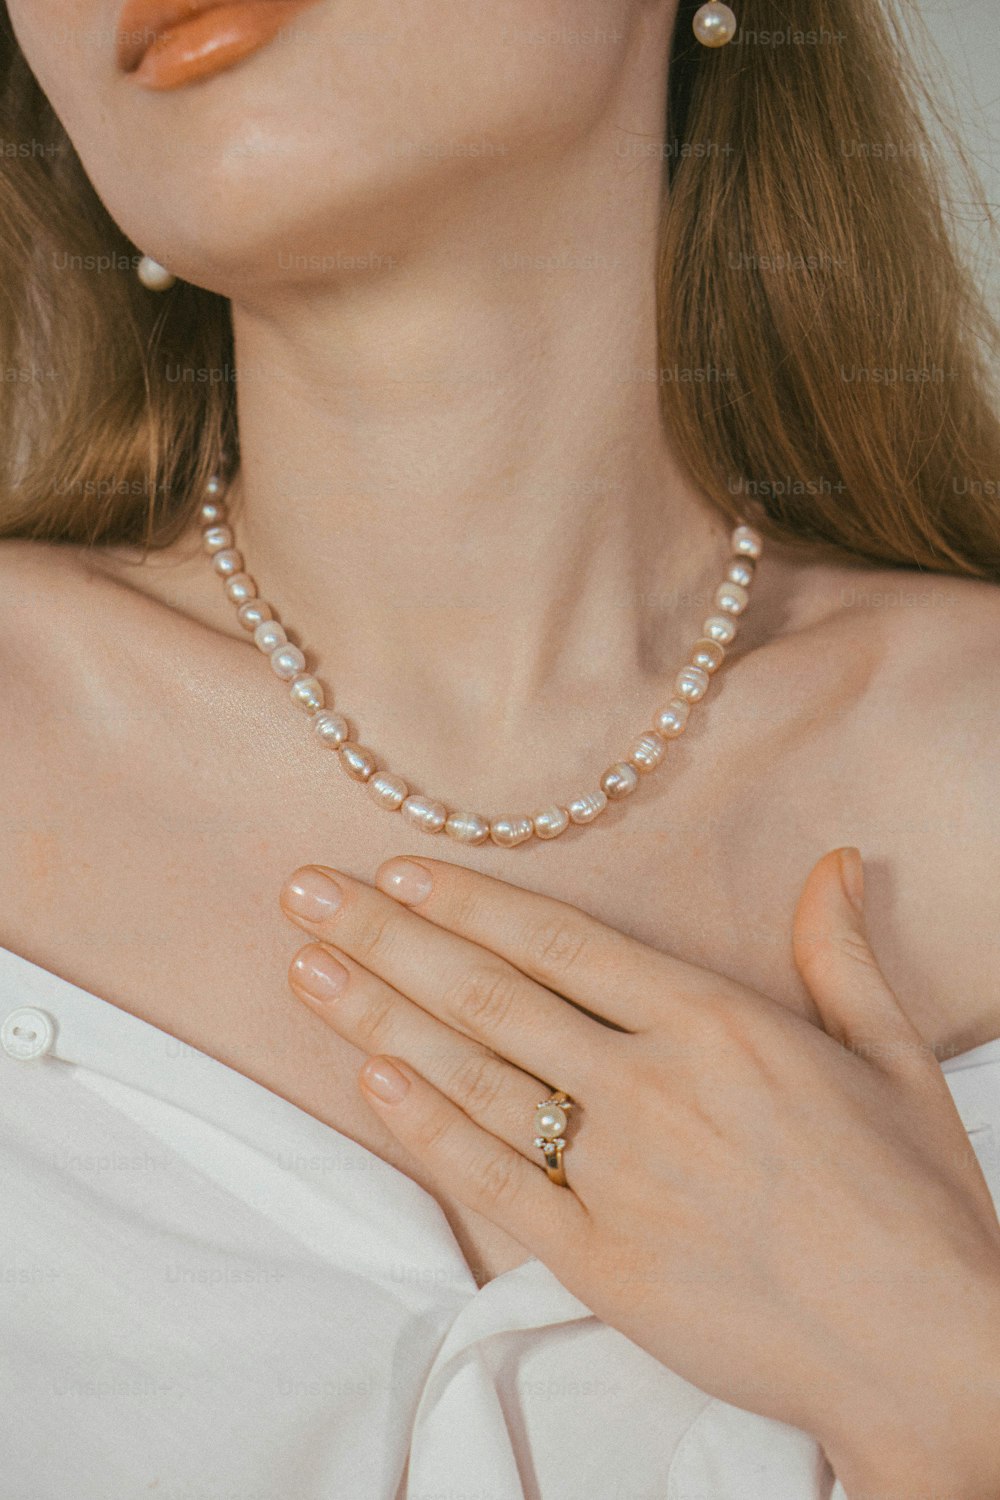 una donna che indossa una collana di perle e un anello